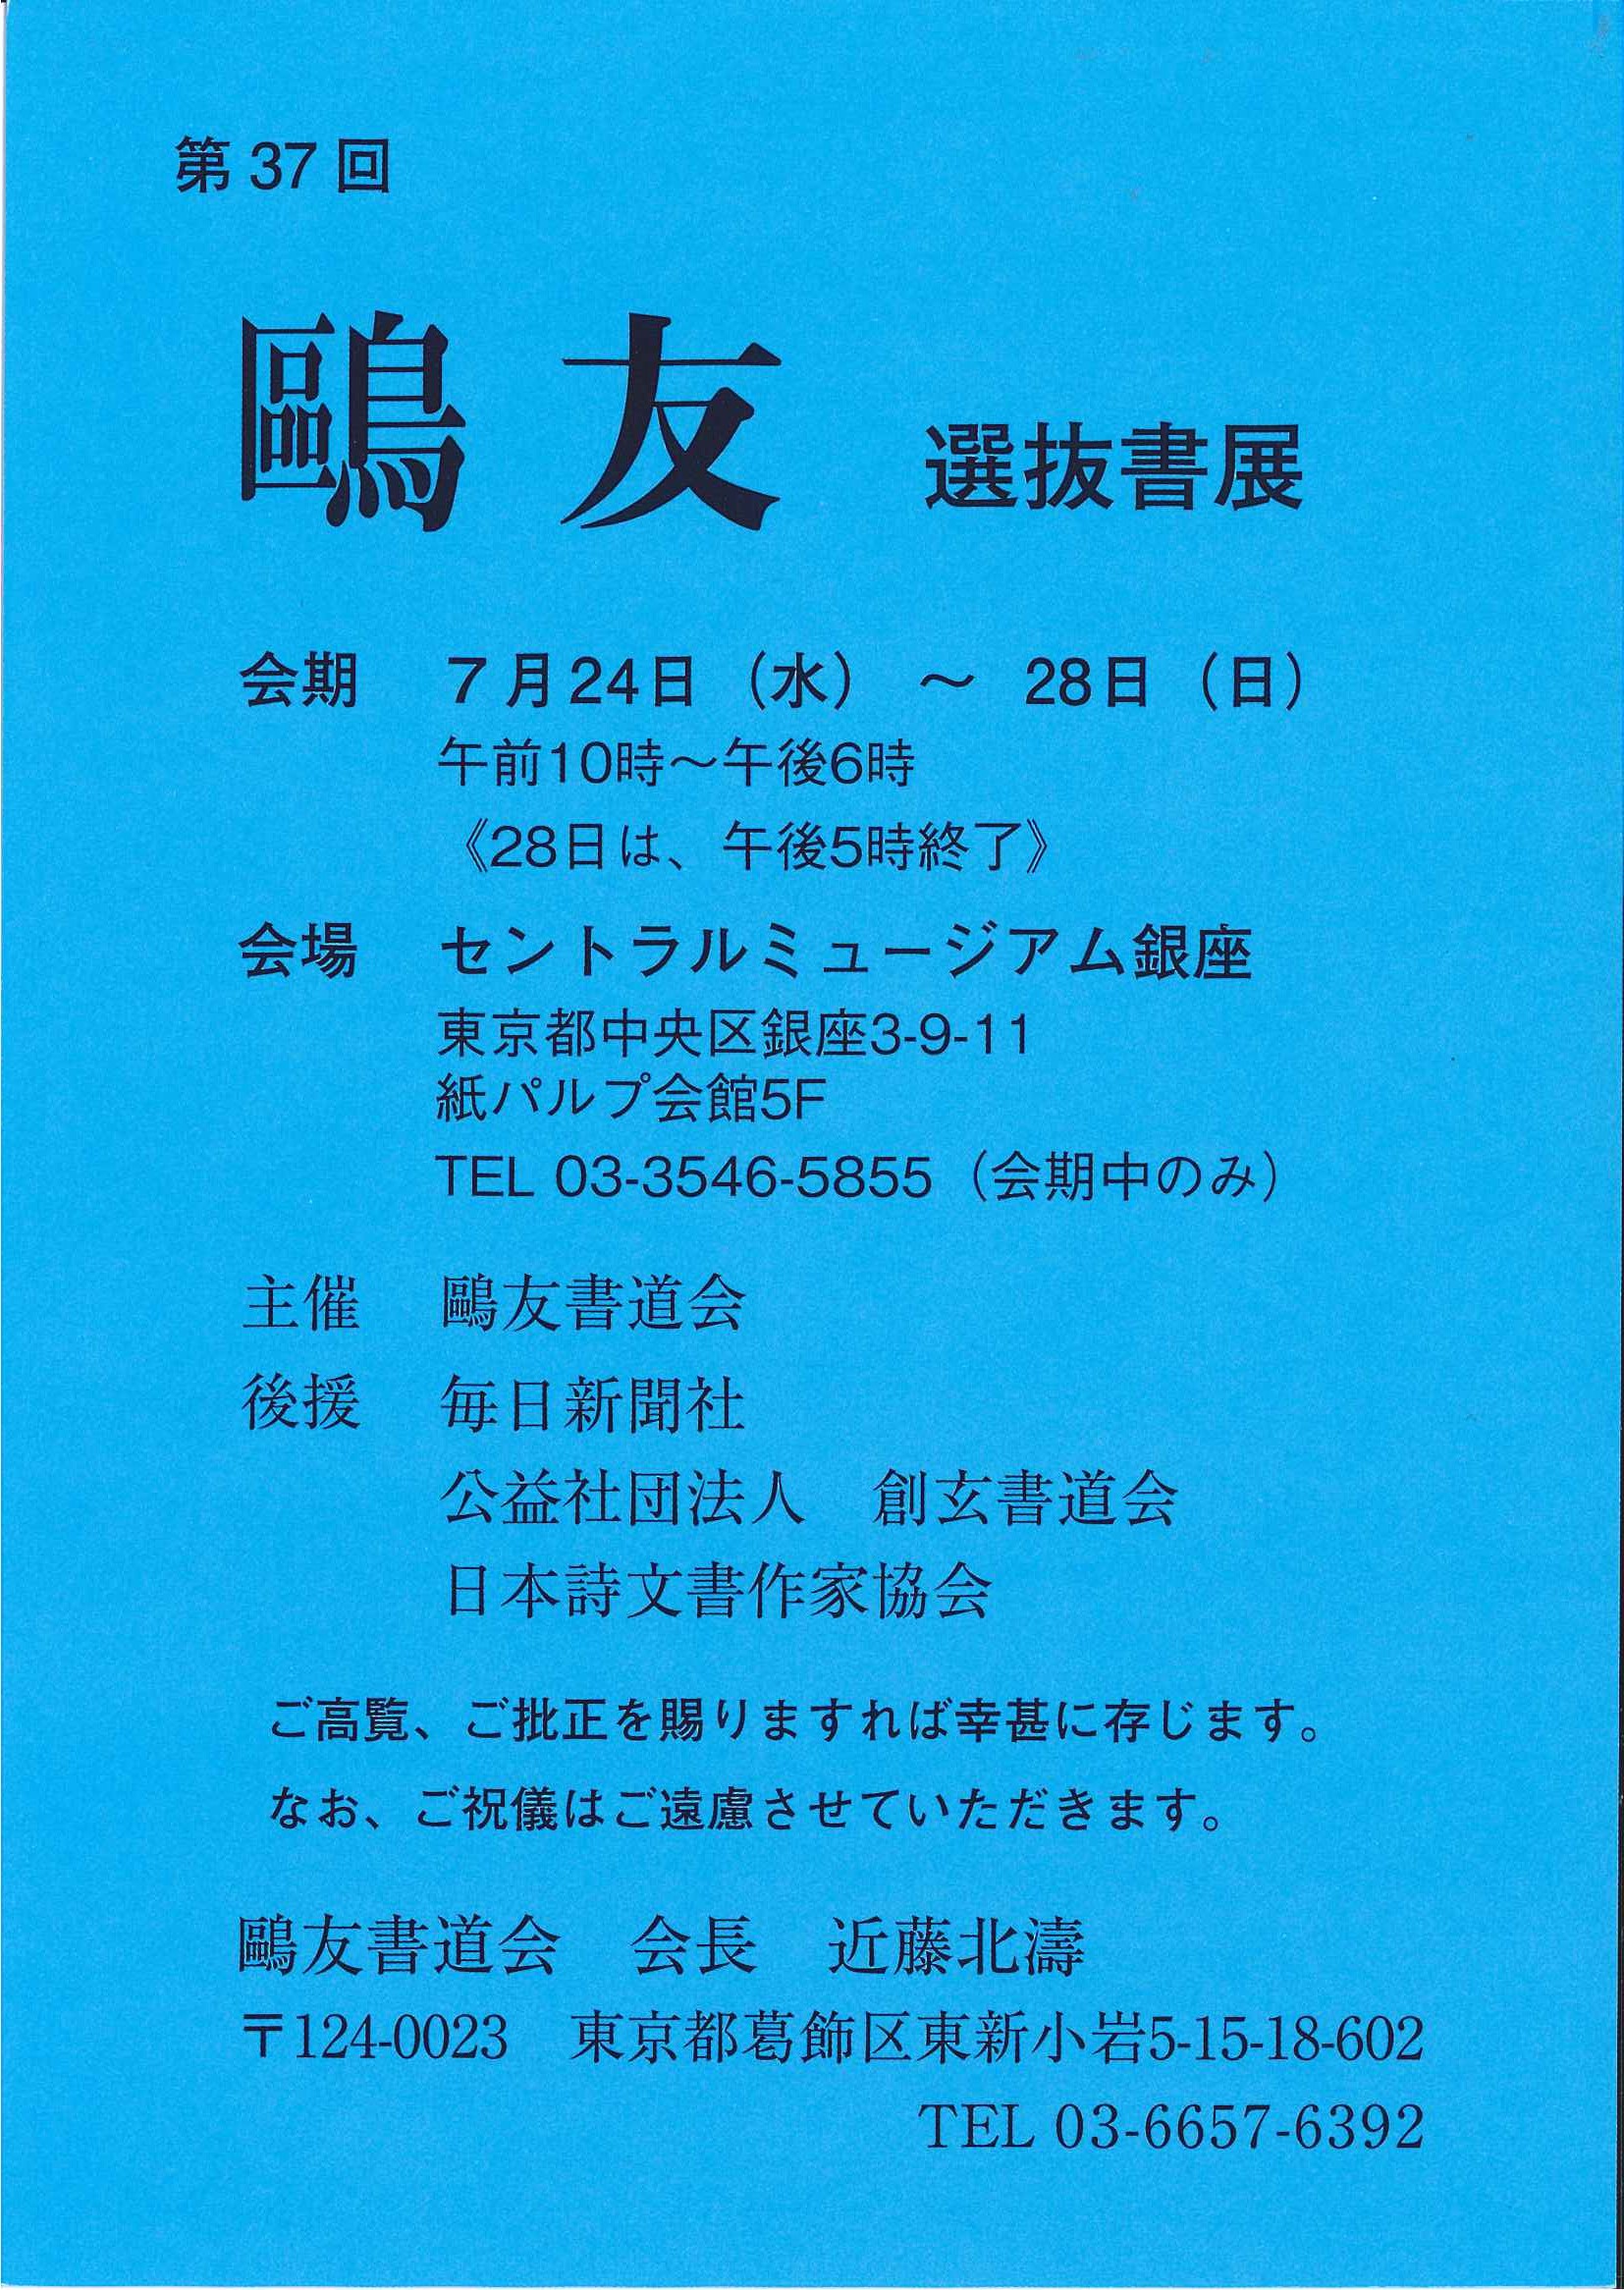 http://www.sogen.or.jp/letter/2019/06/05/20190605131447455_0001.jpg